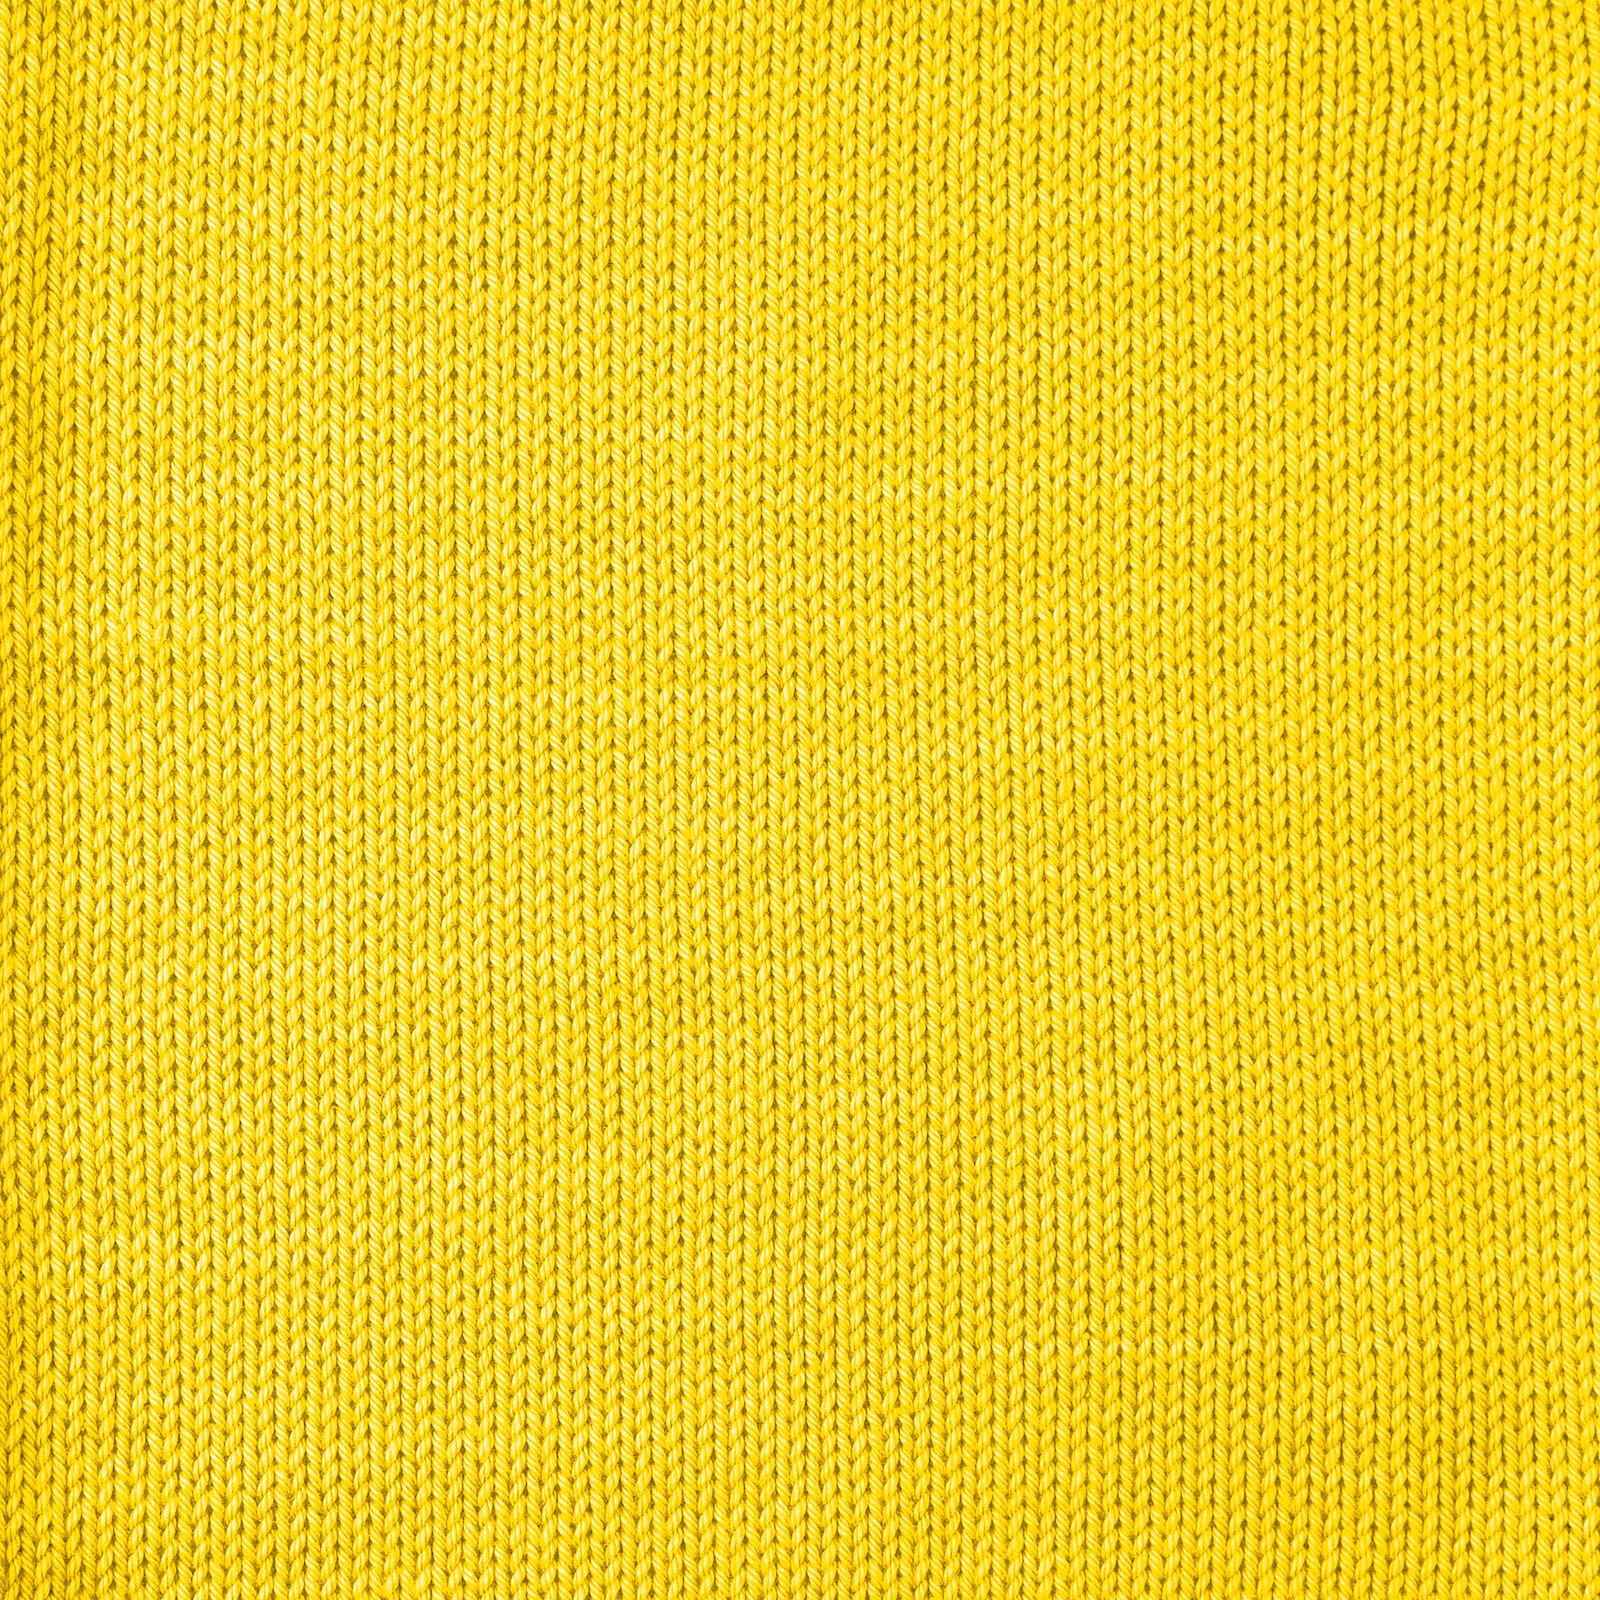 FRAYA, 100% cotton 8/4  yarn  "Colourful", yellow 90060005_sskit